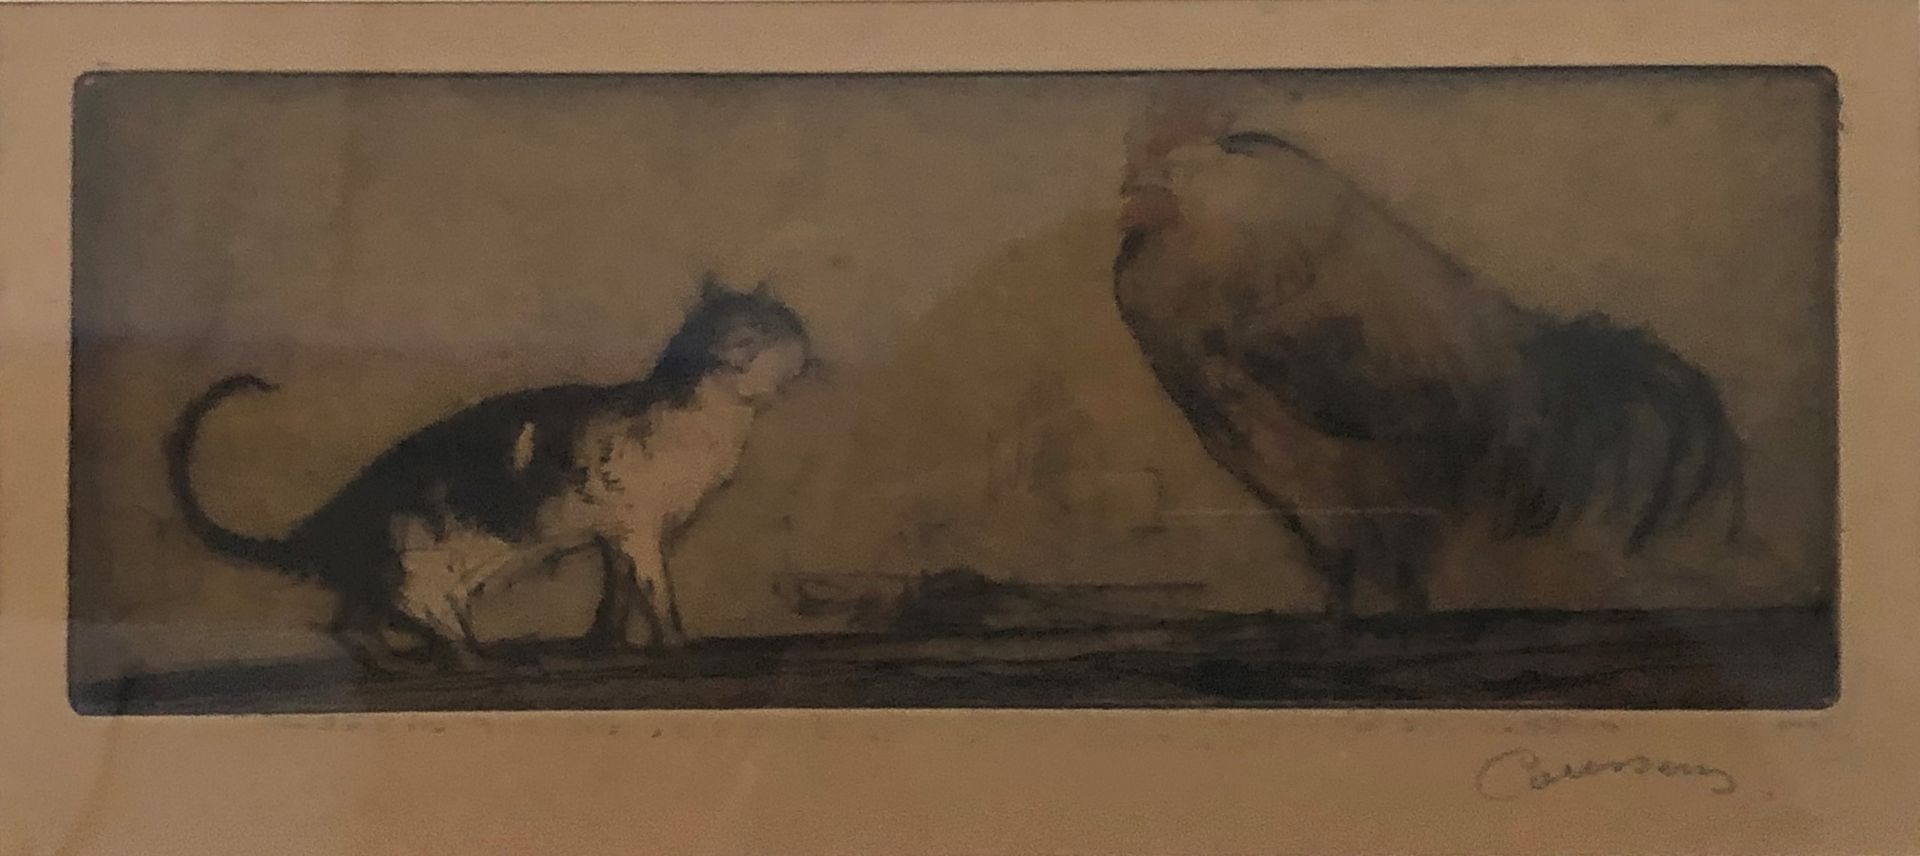 Null 阿尔芒-库森斯 (1881-1935)

猫和公鸡。

多色雕版画，右下方有签名。

10 x 23 cm

在框架下。